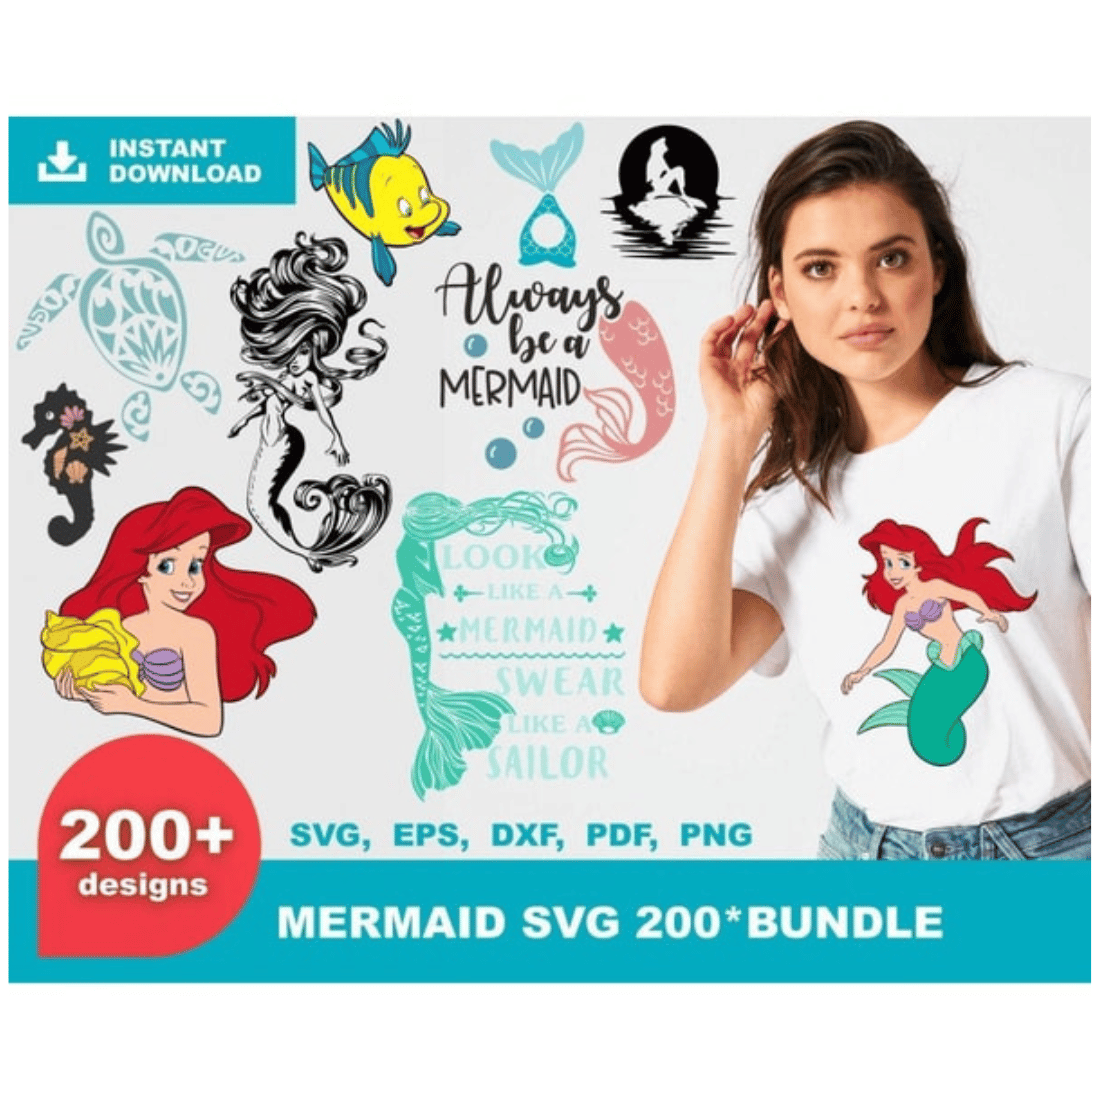 Little Mermaid SVG, Mermaid Tail SVG, Mermaid Symbol, Mermaid Clipart, Ariel SVG, Mermaid Silhouette, Little Mermaid PNG cover image.